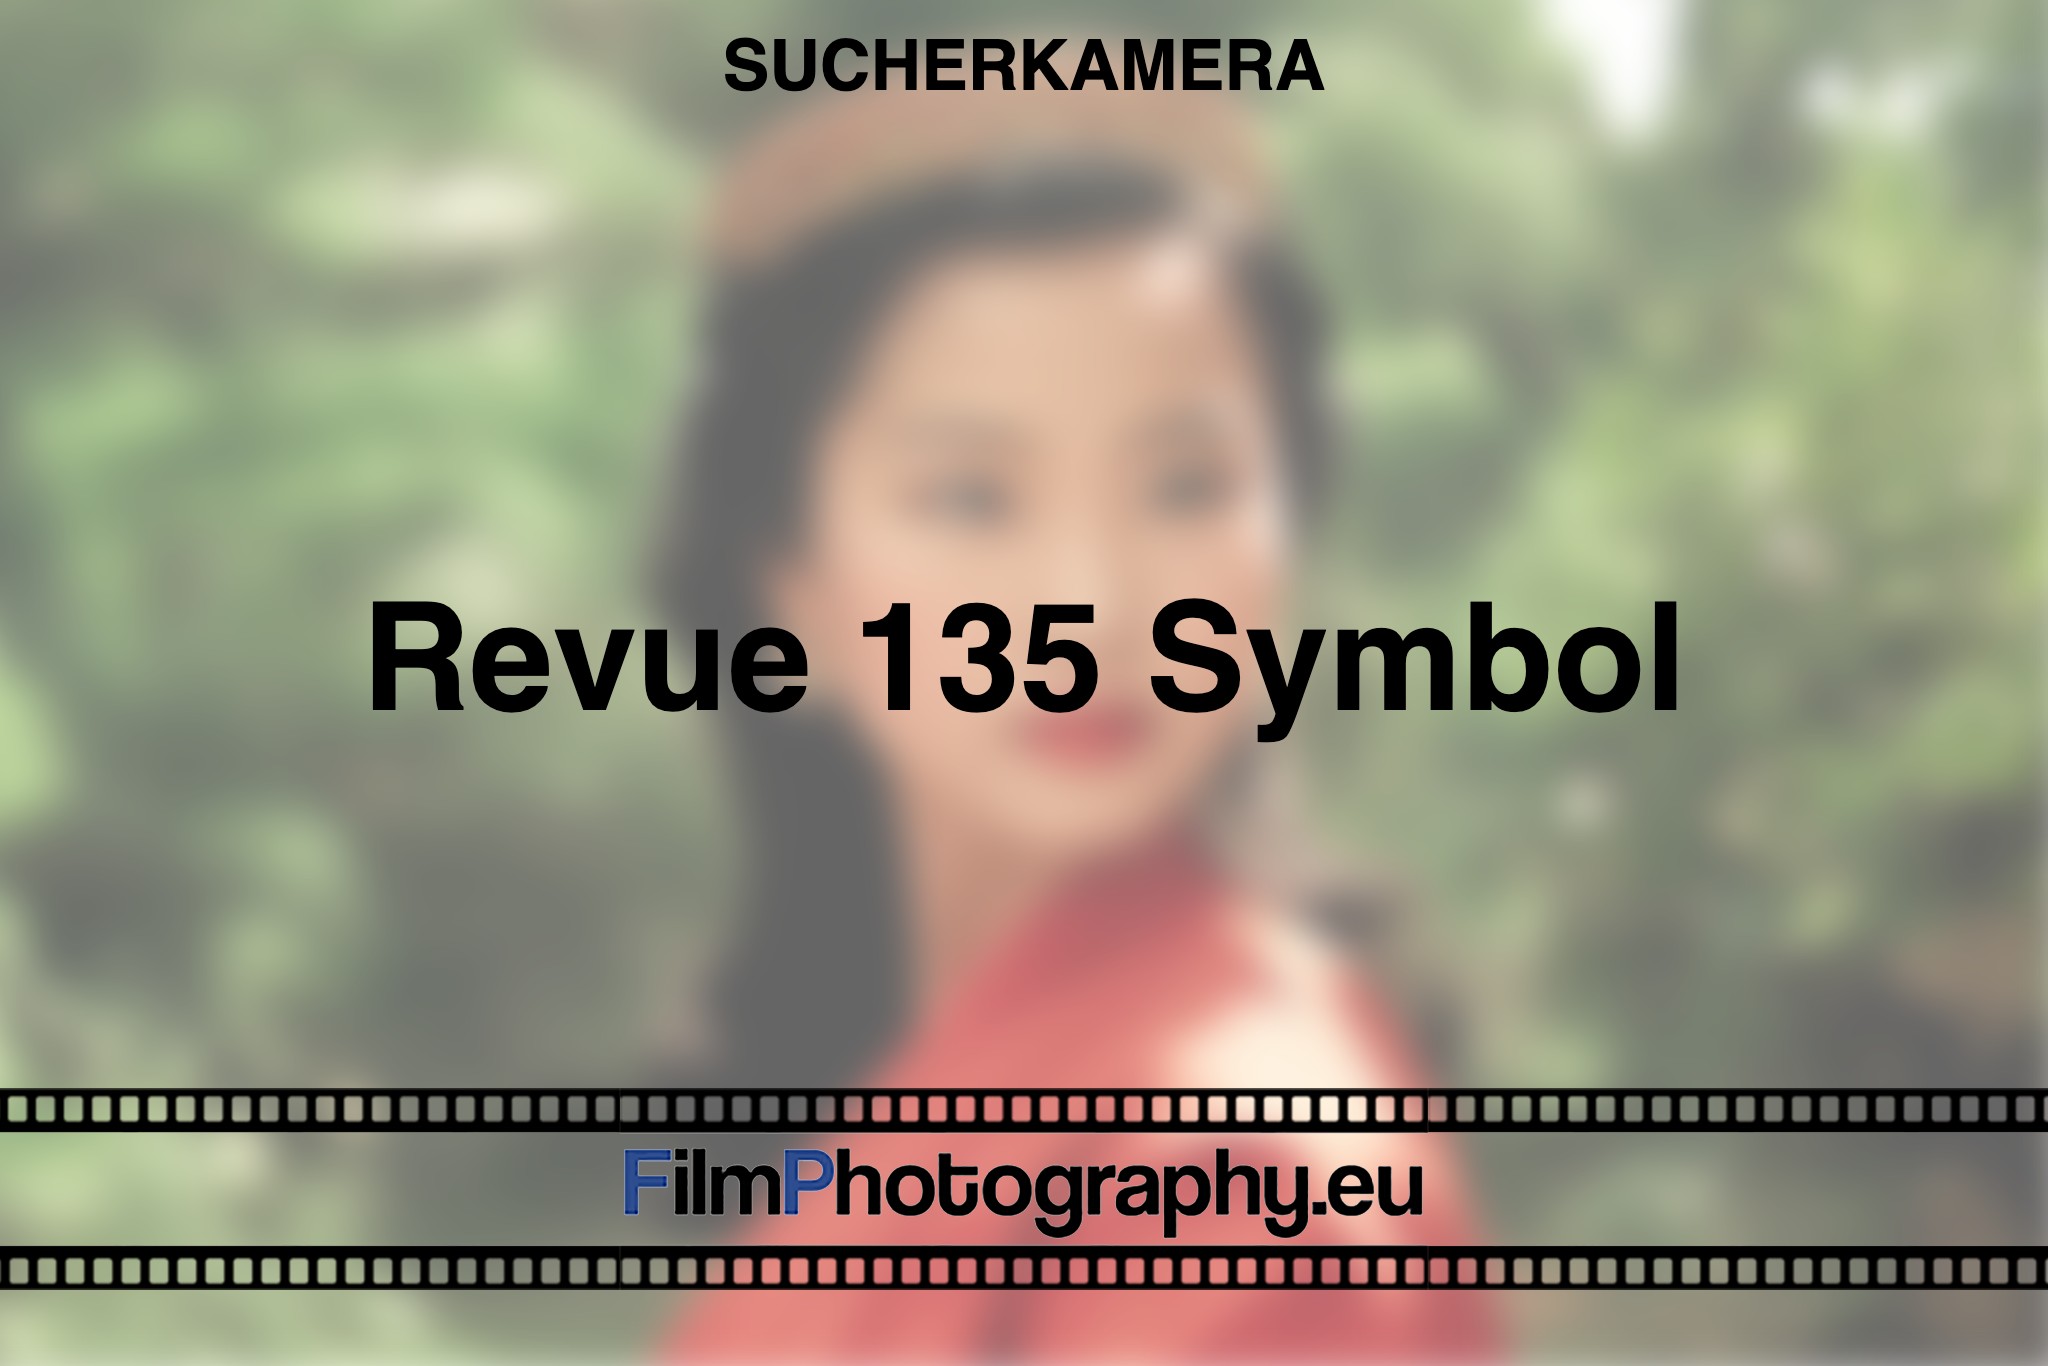 revue-135-symbol-sucherkamera-bnv